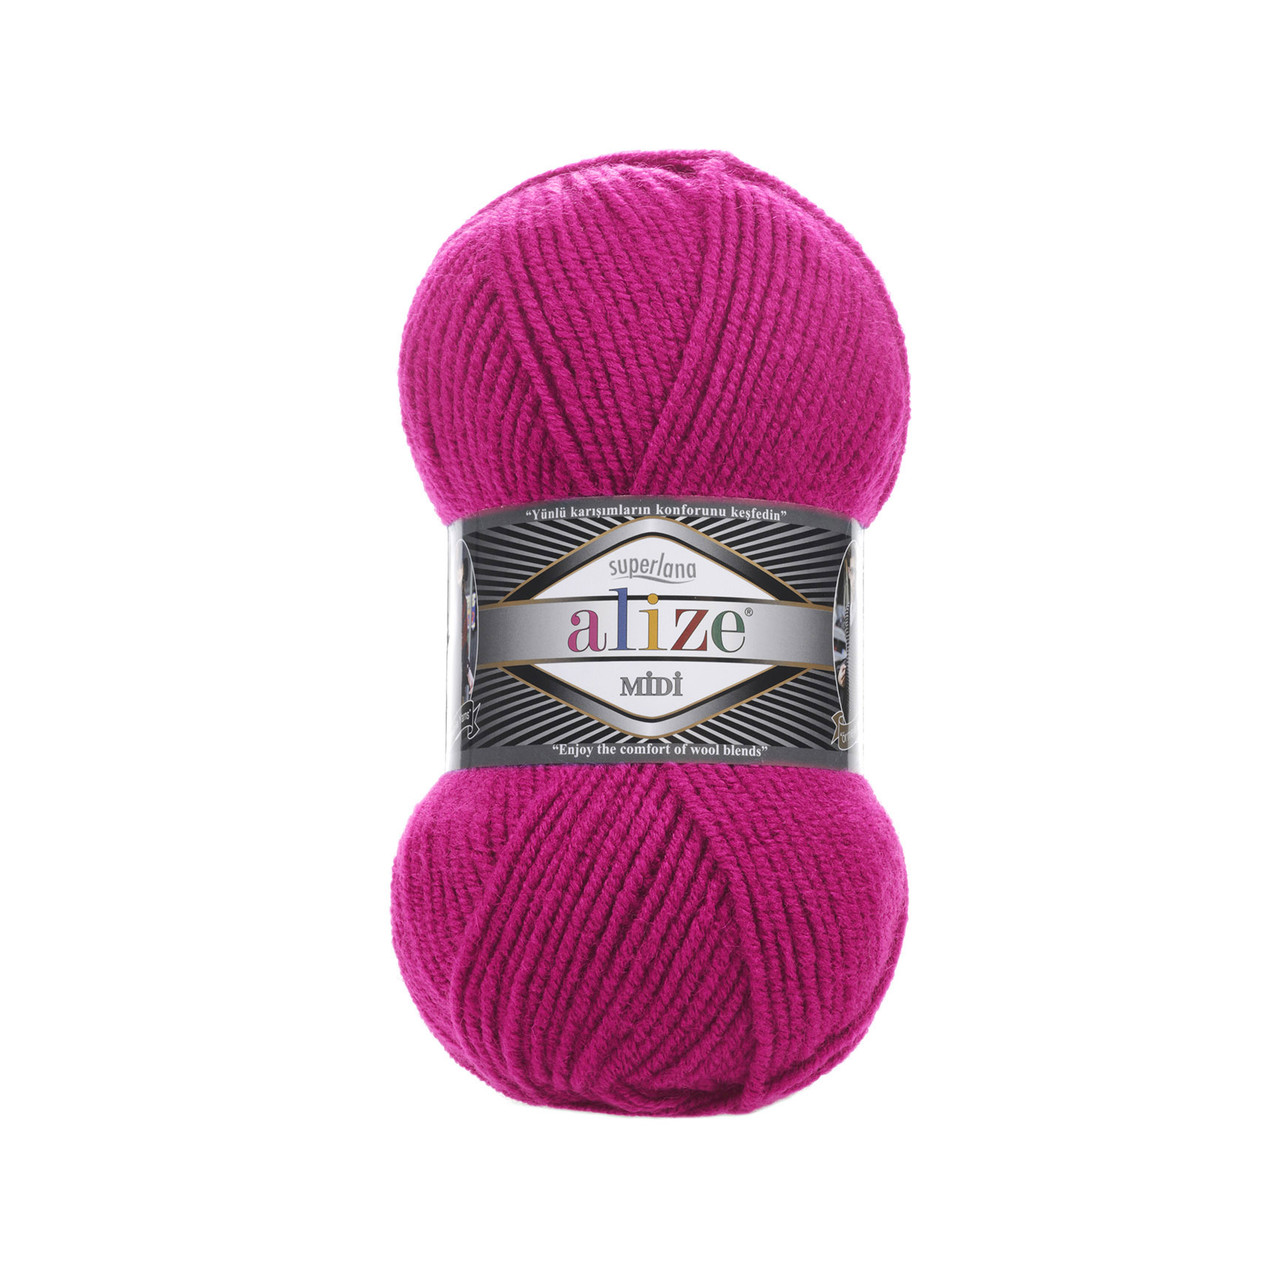 Пряжа Ализе Суперлана Миди (Alize Superlana Midi) цвет 149 ярко-розовый /фуксия